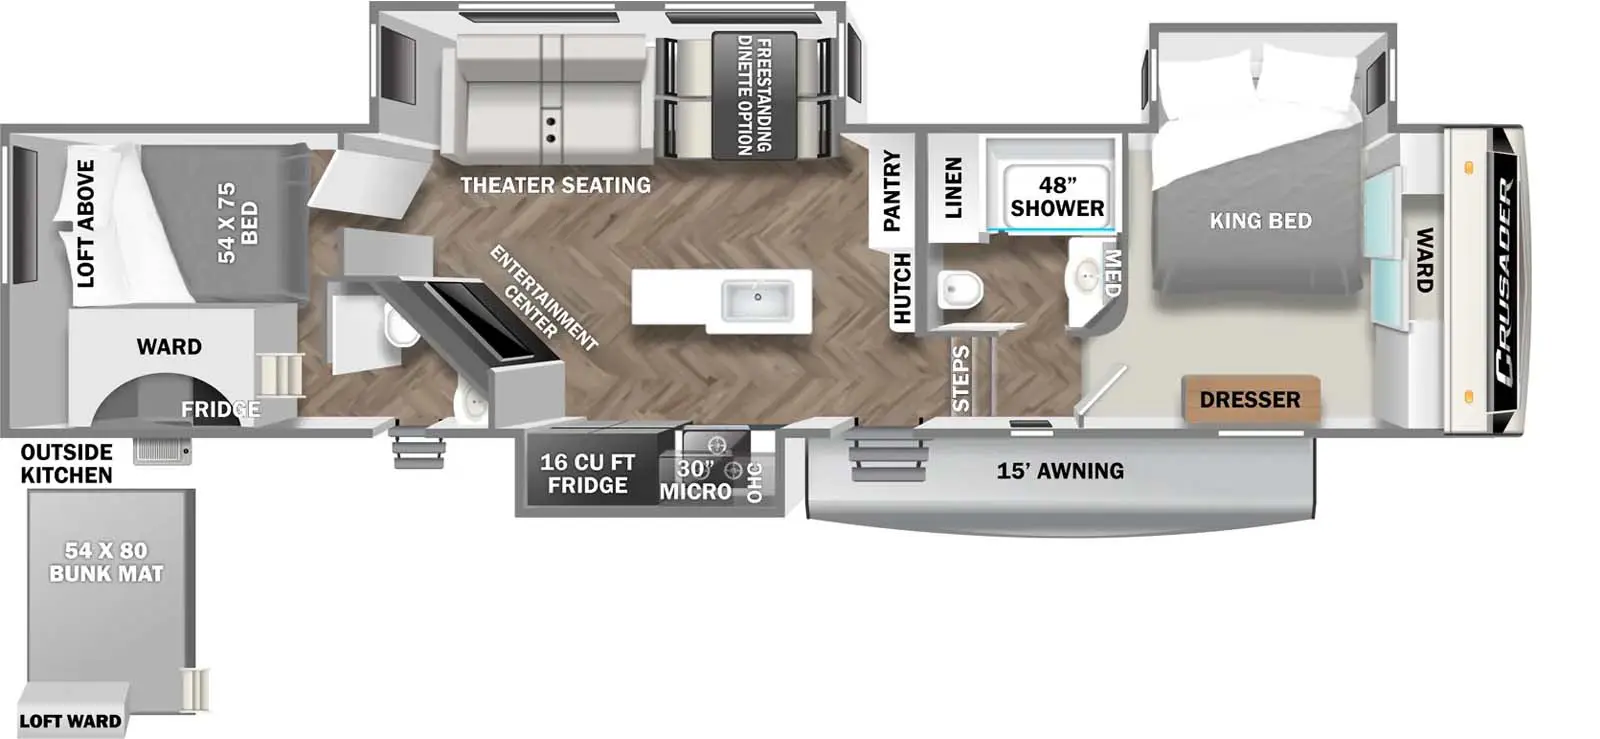 395BHL Floorplan Image